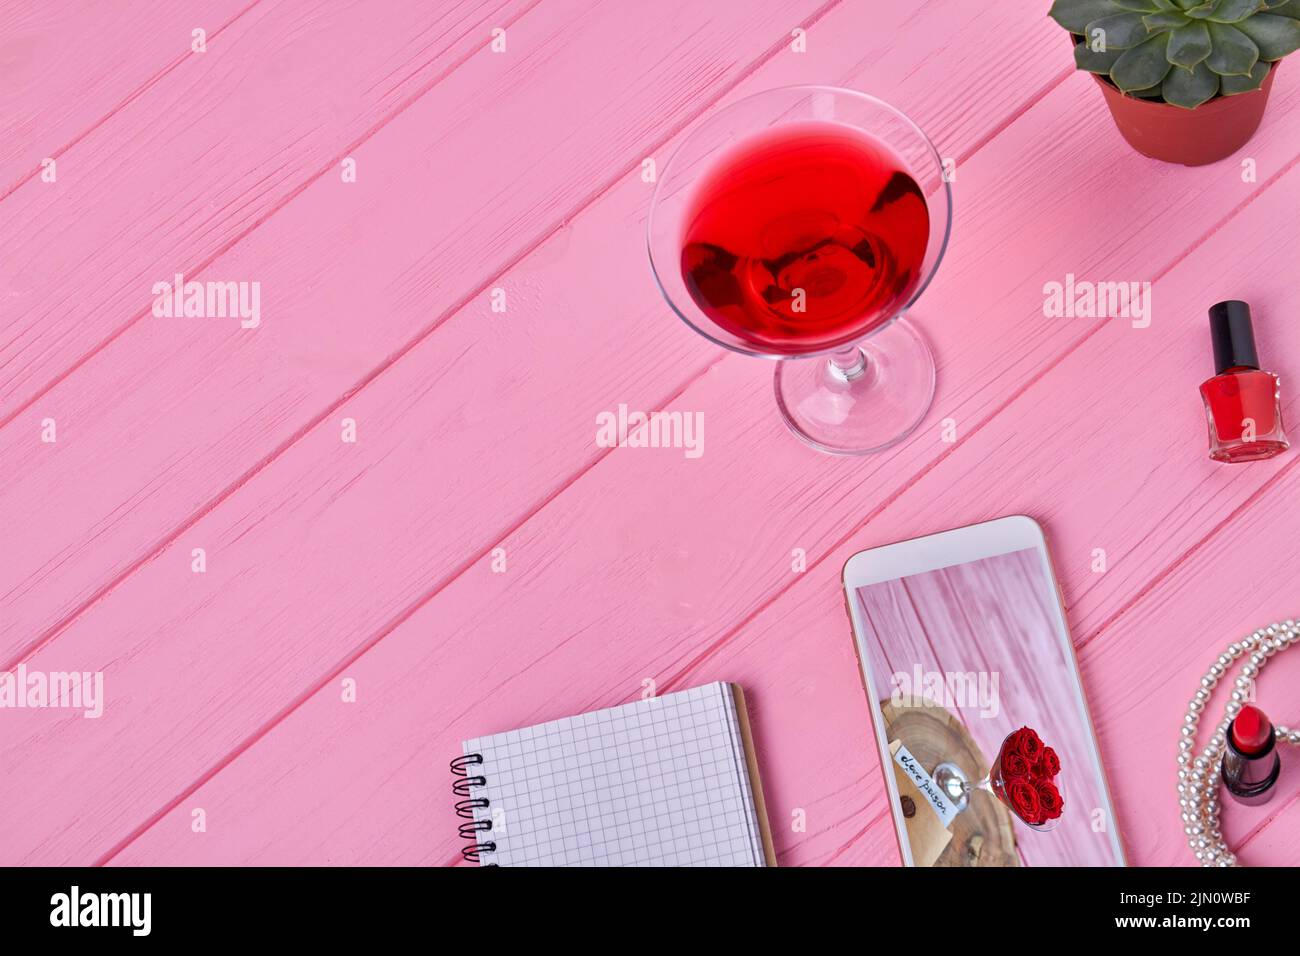 Vista superior de accesorios femeninos sobre un escritorio de madera rosa. Smartphone con bloc de notas y cóctel. Foto de stock